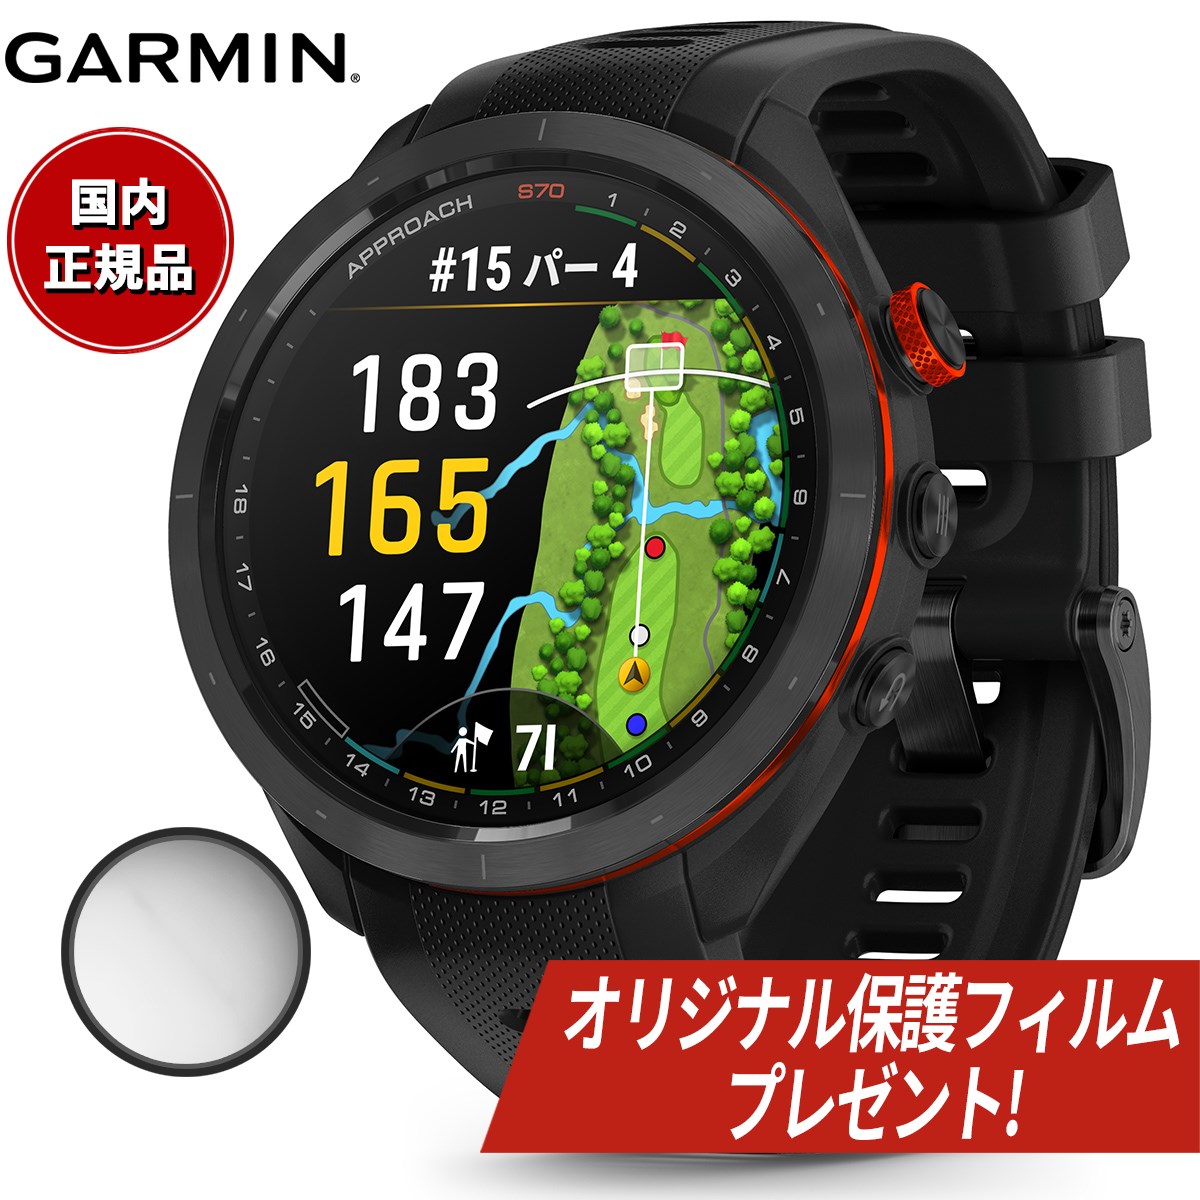 【オリジナル保護フィルム付き】【24回分割手数料無料！】ガーミン GARMIN Approach S70 アプローチ S70 47mm ゴルフ GPS スマートウォッチ ウェアラブル 010-02746-22 腕時計 メンズ レディース ブラック